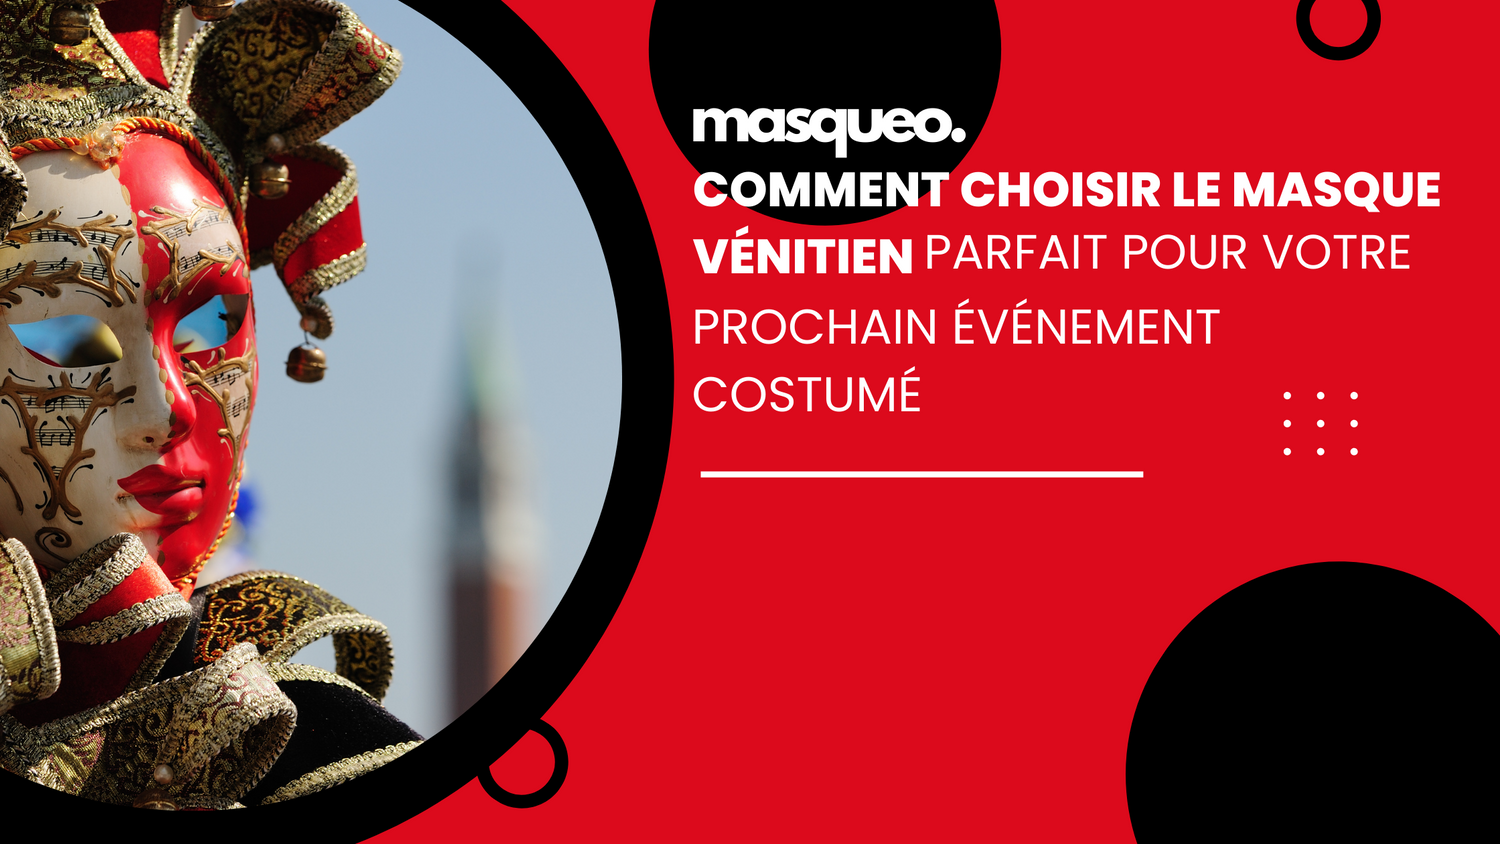 Comment choisir le masque vénitien parfait pour votre prochain événement costumé